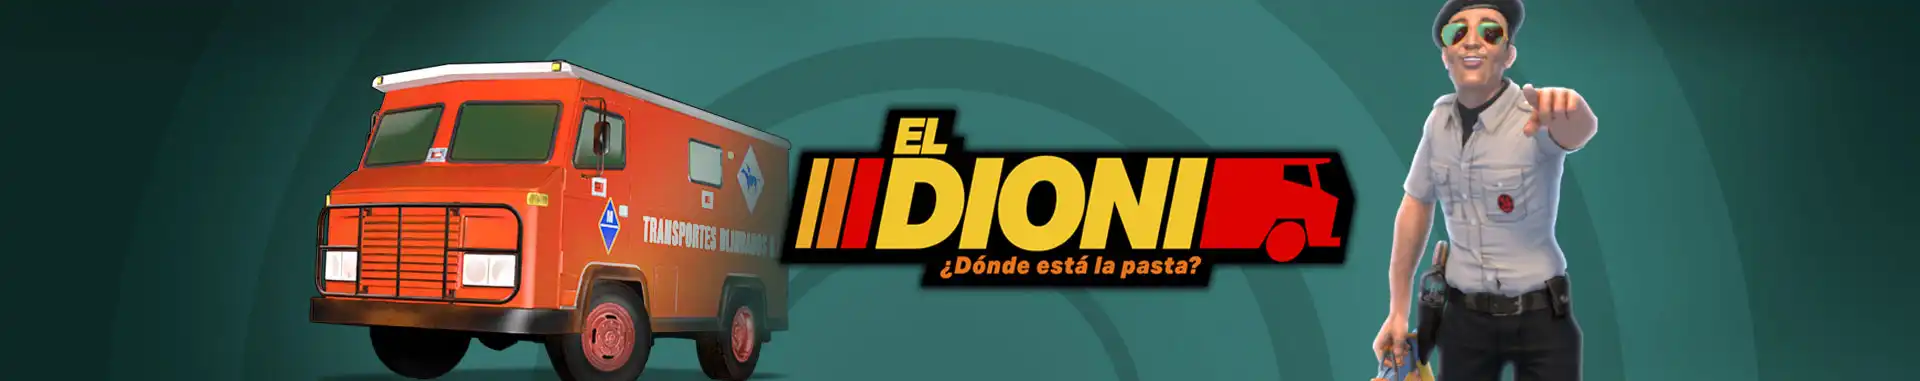 Tragaperras Online El Dioni